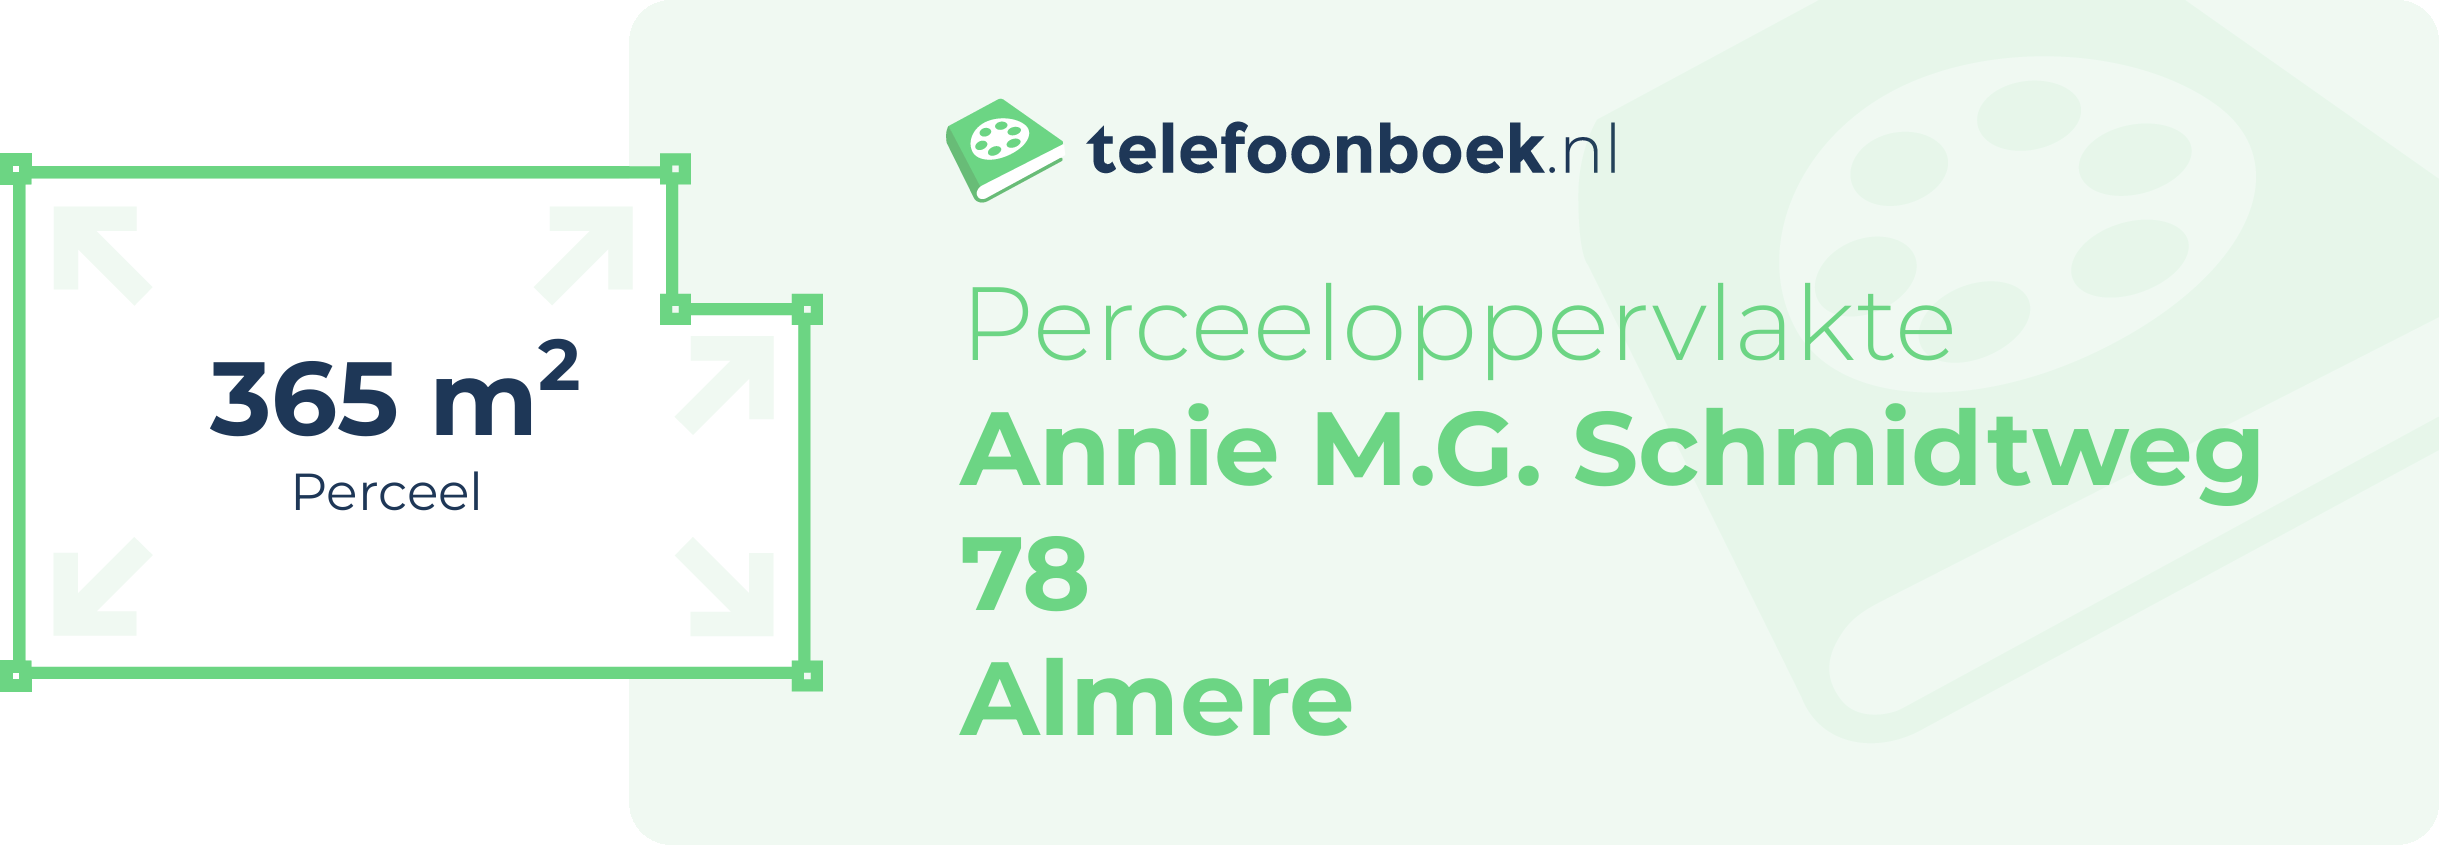 Perceeloppervlakte Annie M.G. Schmidtweg 78 Almere